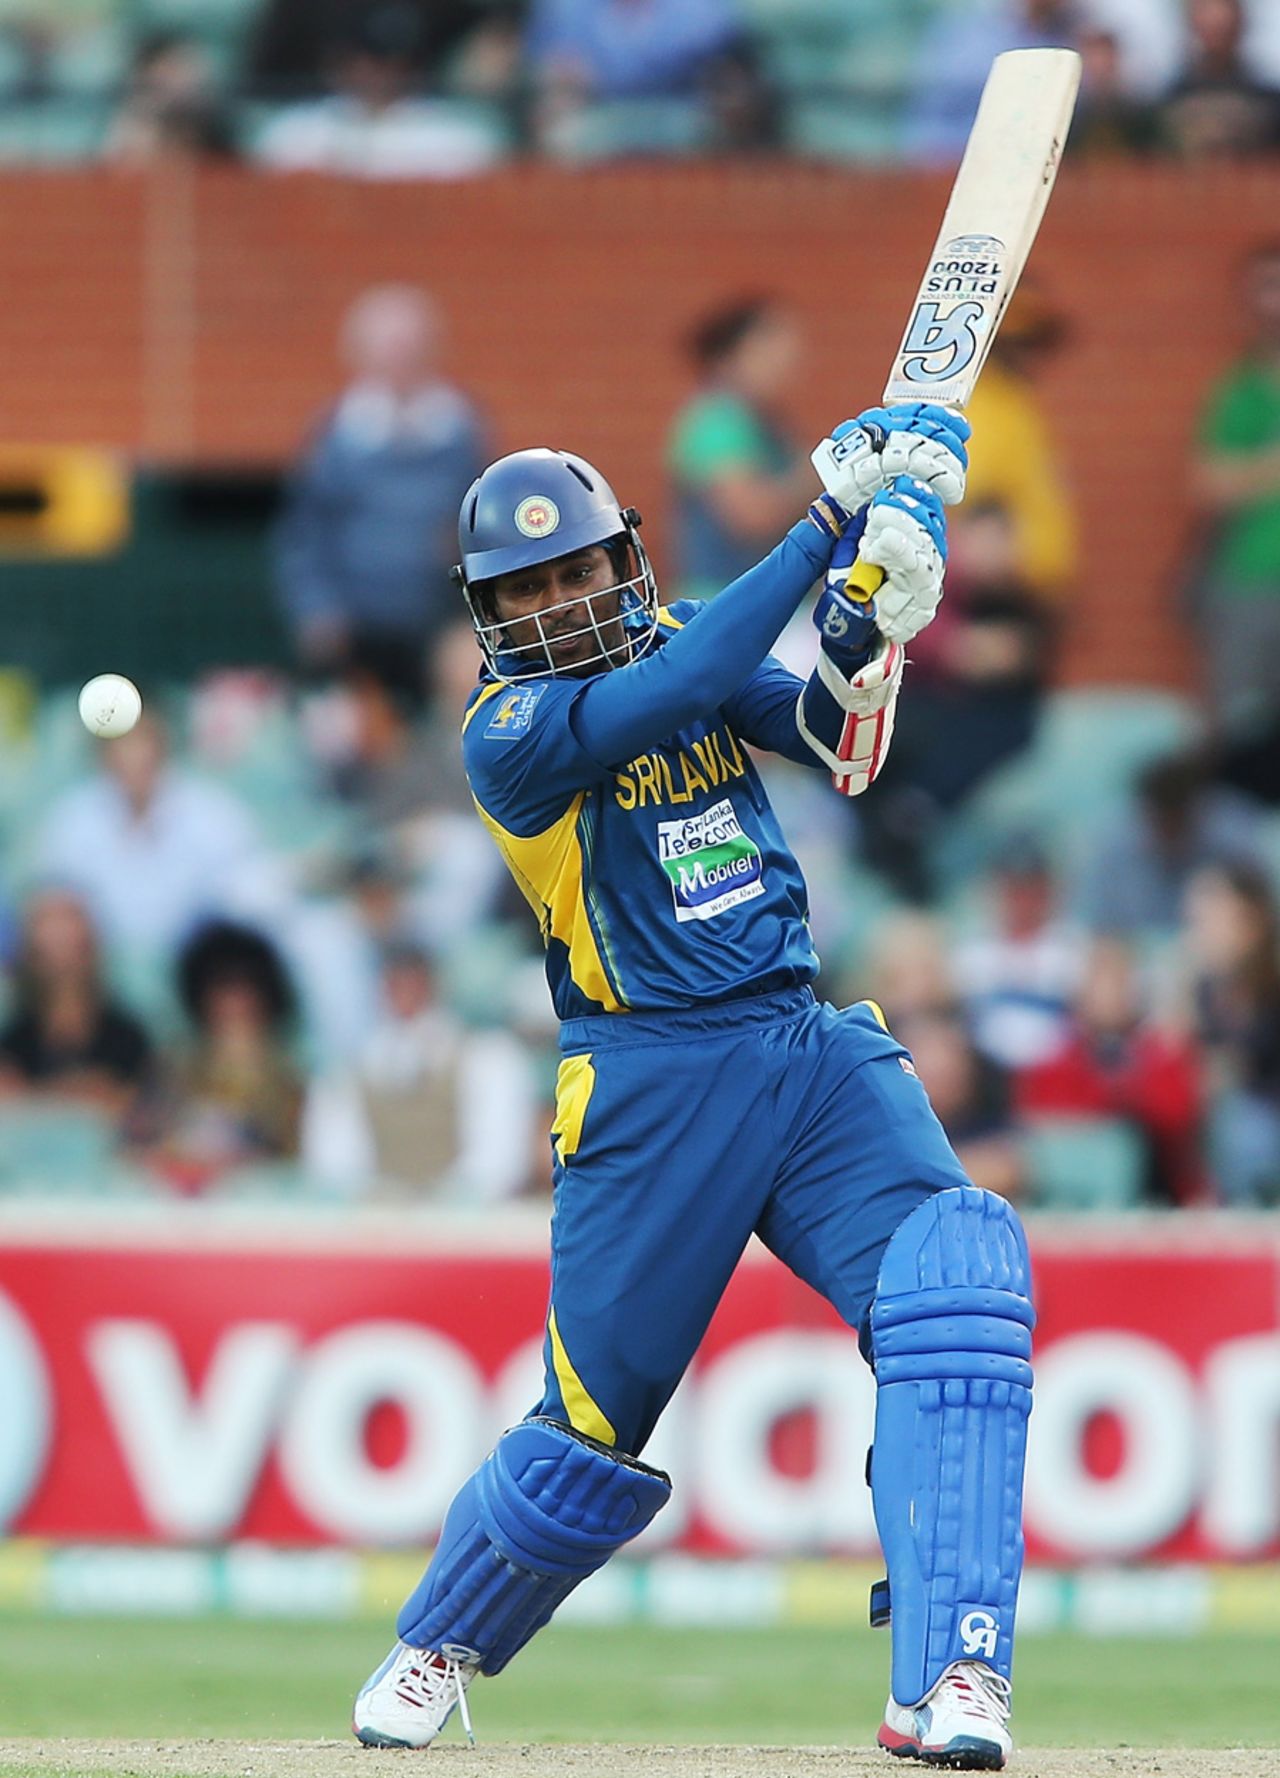 Tillakaratne Dilshan swats one through the off side, Australia v Sri Lanka, 2nd ODI, Adelaide, January 13, 2013